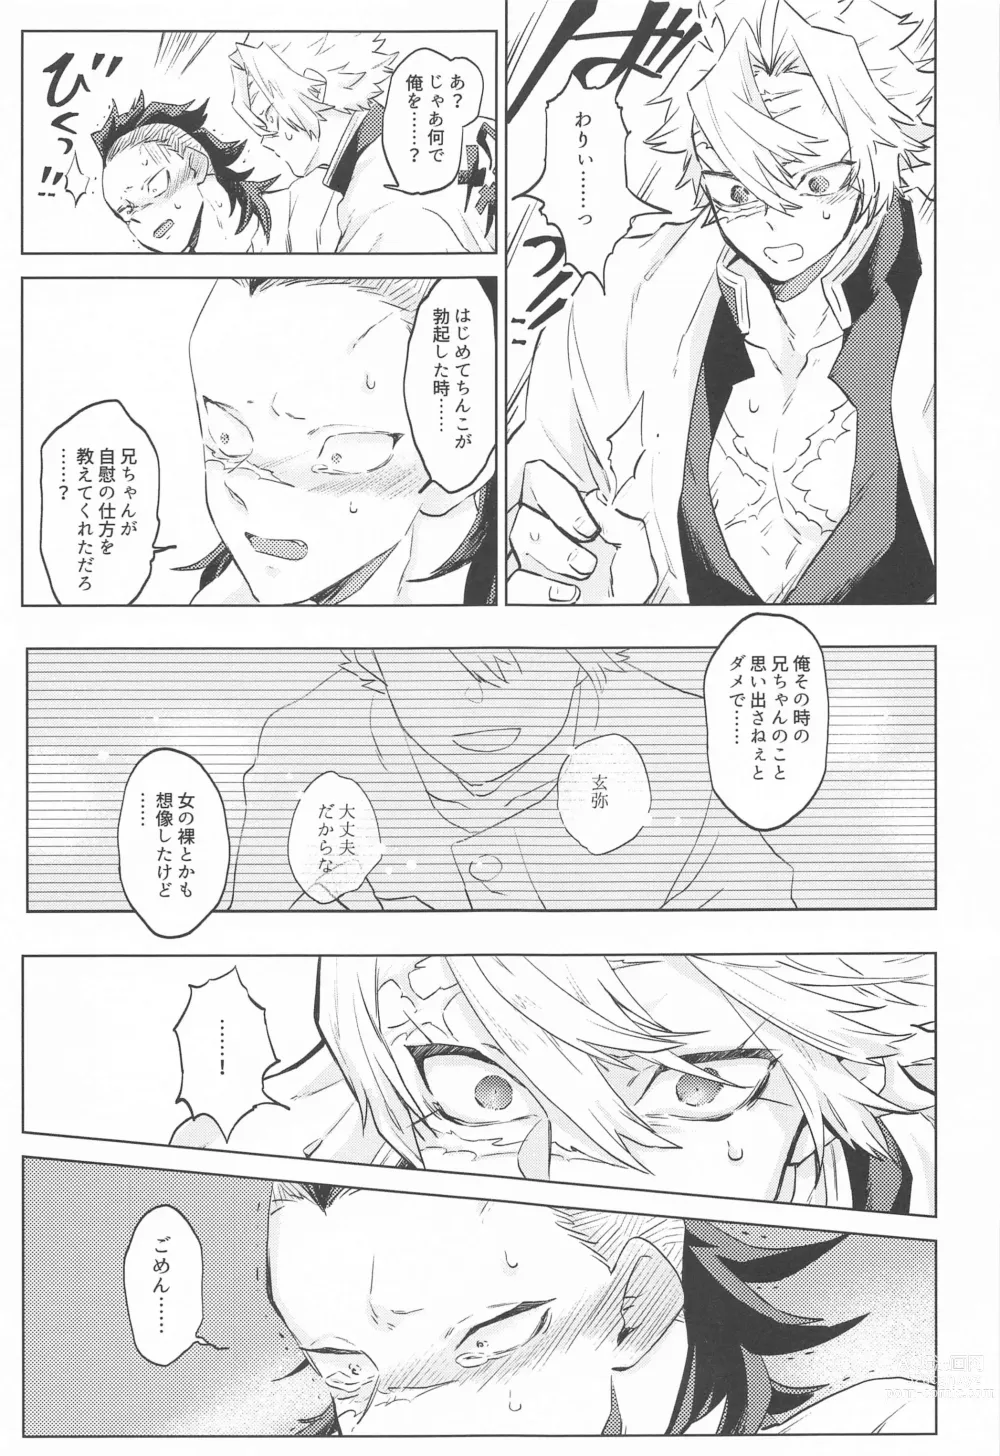 Page 9 of doujinshi Shion no Kusari